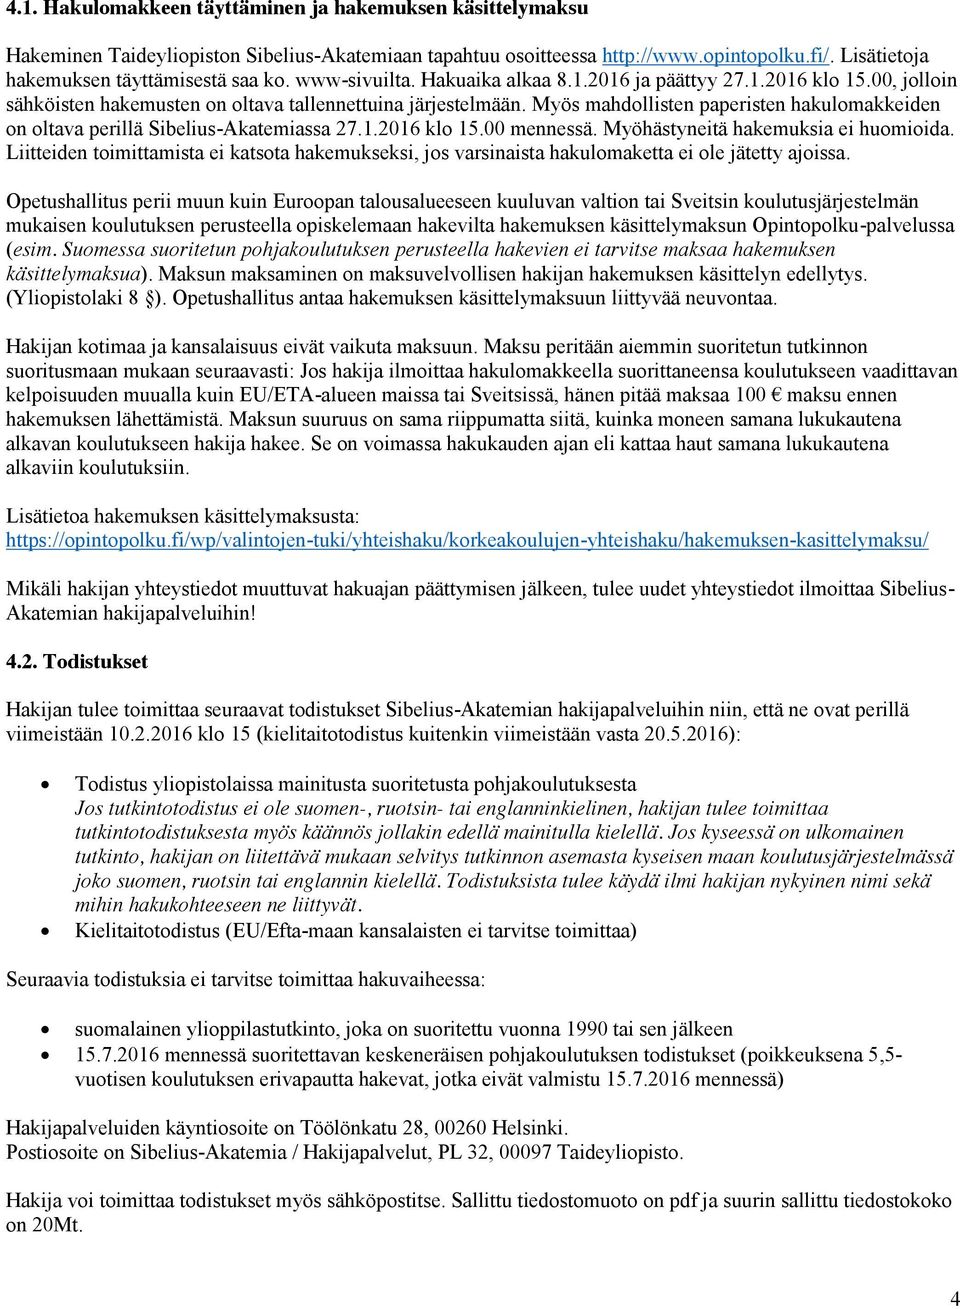 Myös mahdollisten paperisten hakulomakkeiden on oltava perillä Sibelius-Akatemiassa 27.1.2016 klo 15.00 mennessä. Myöhästyneitä hakemuksia ei huomioida.